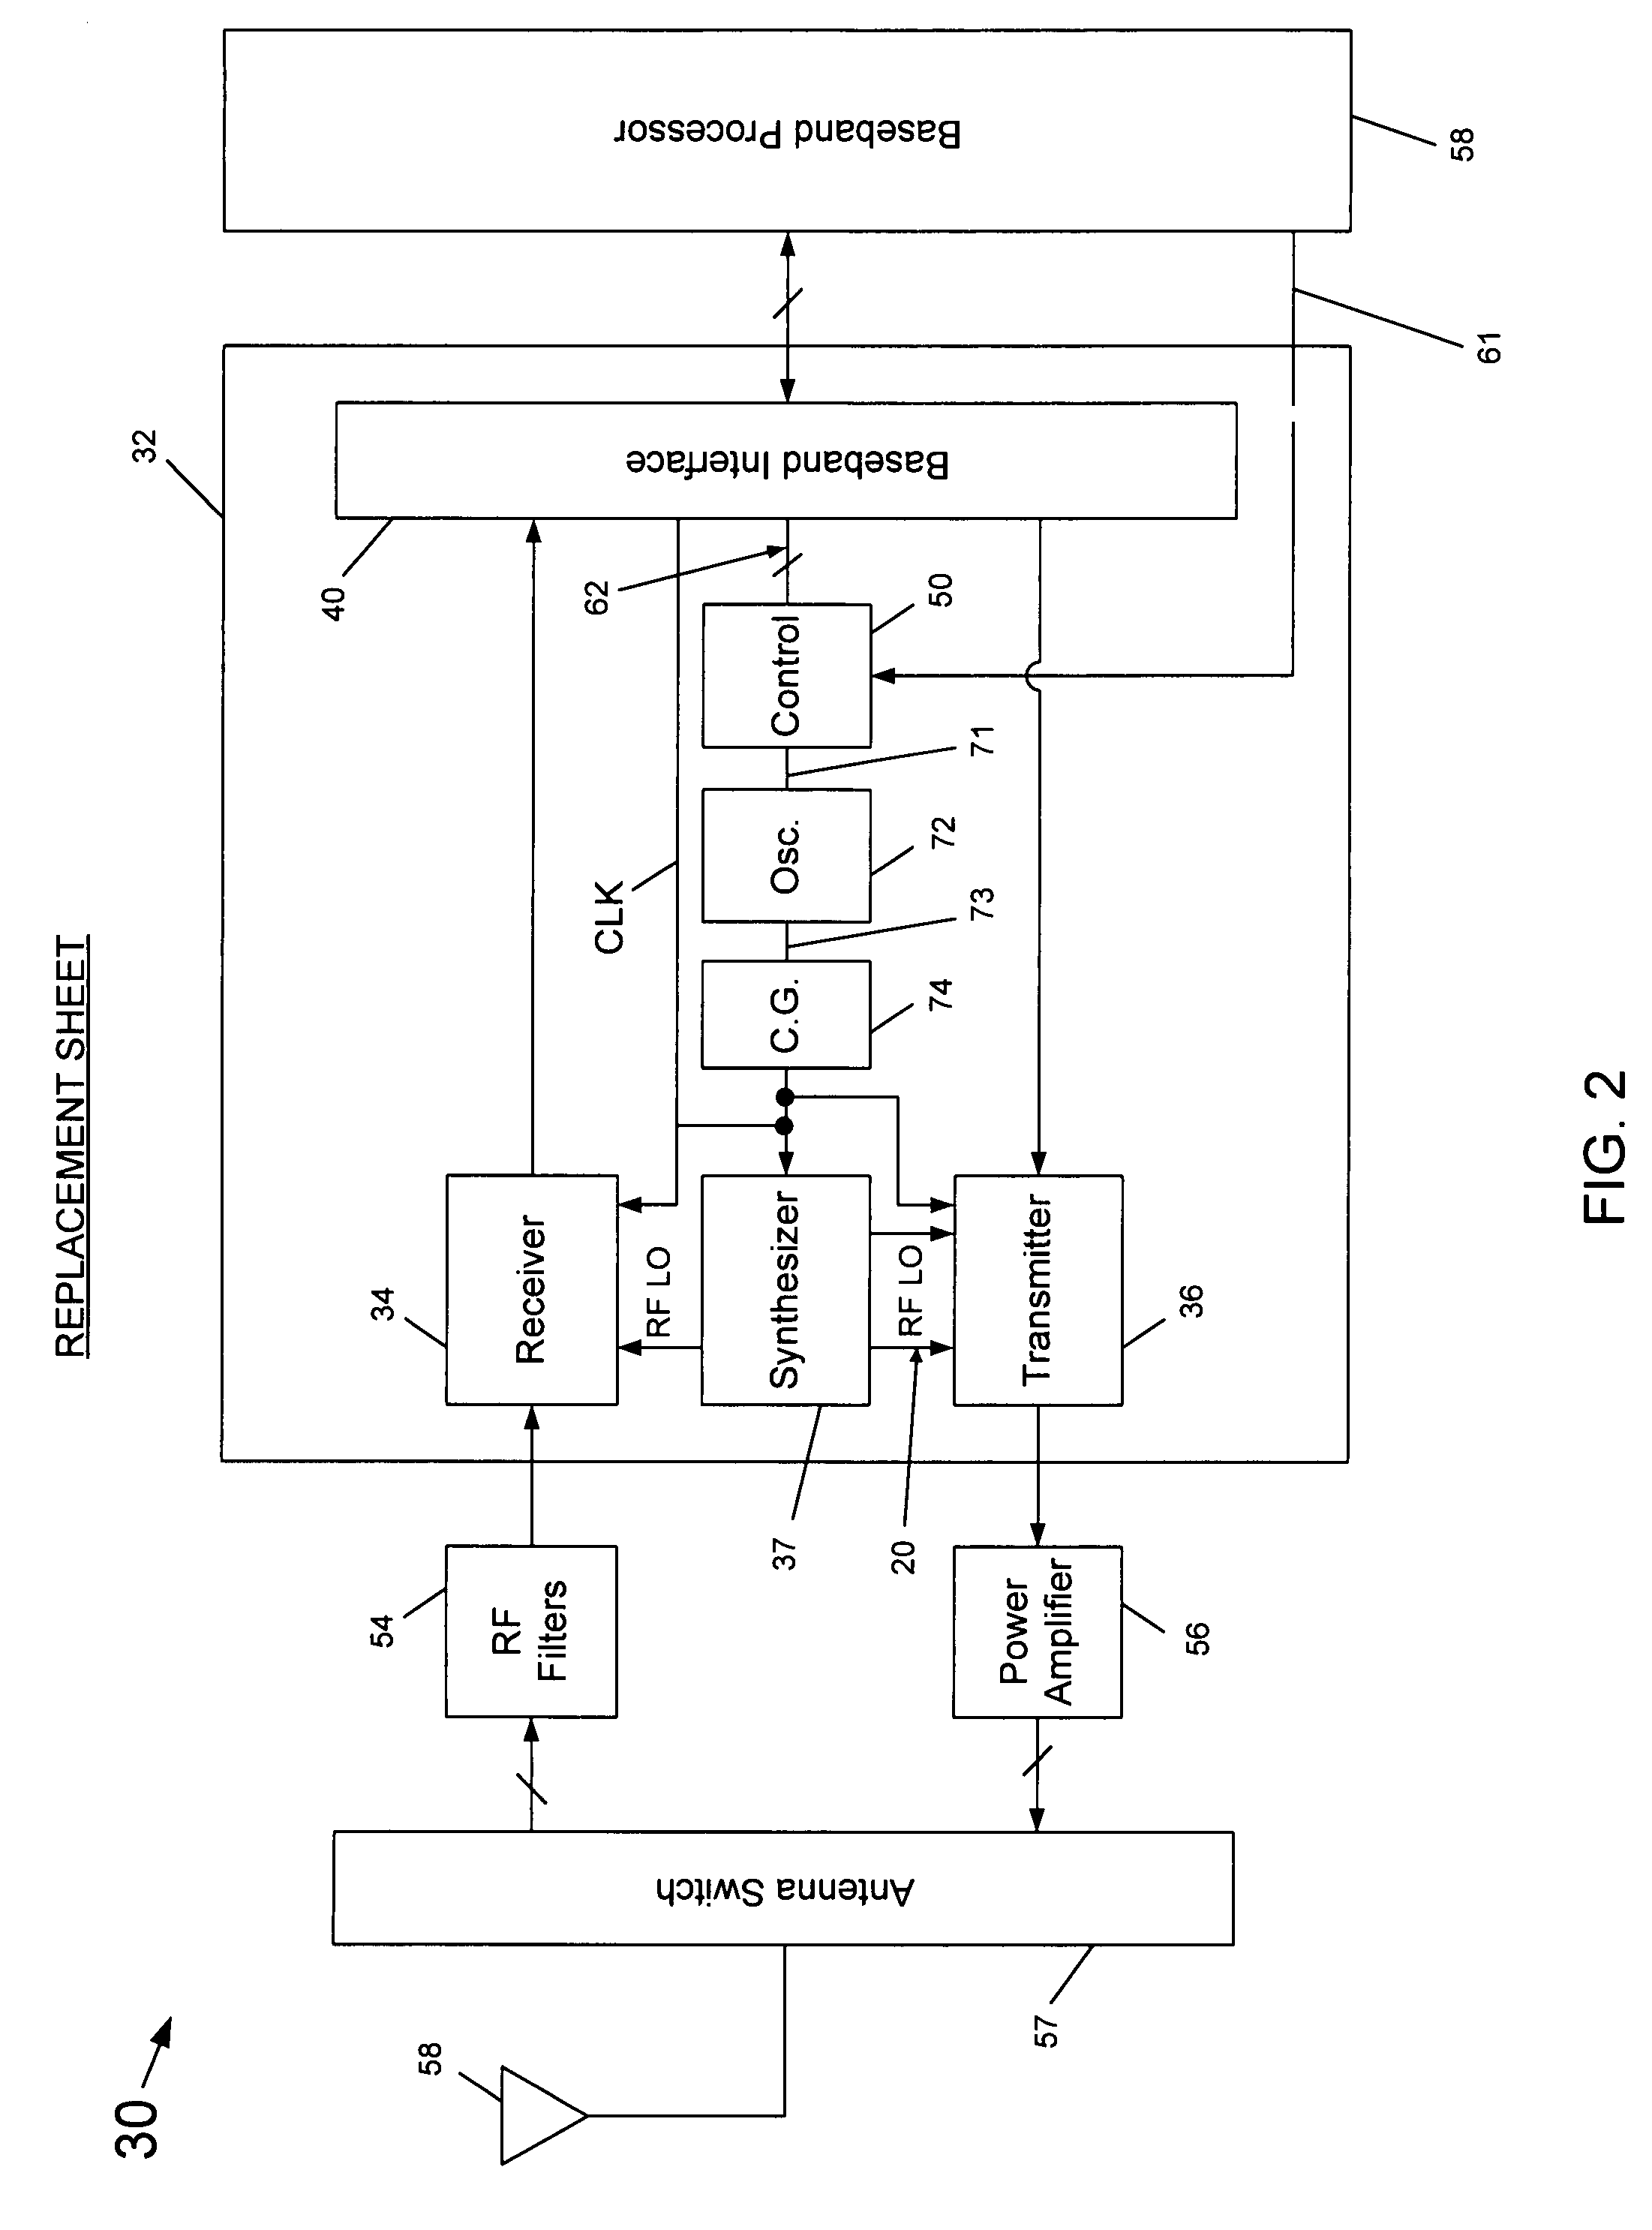 Capacitor array segmentation